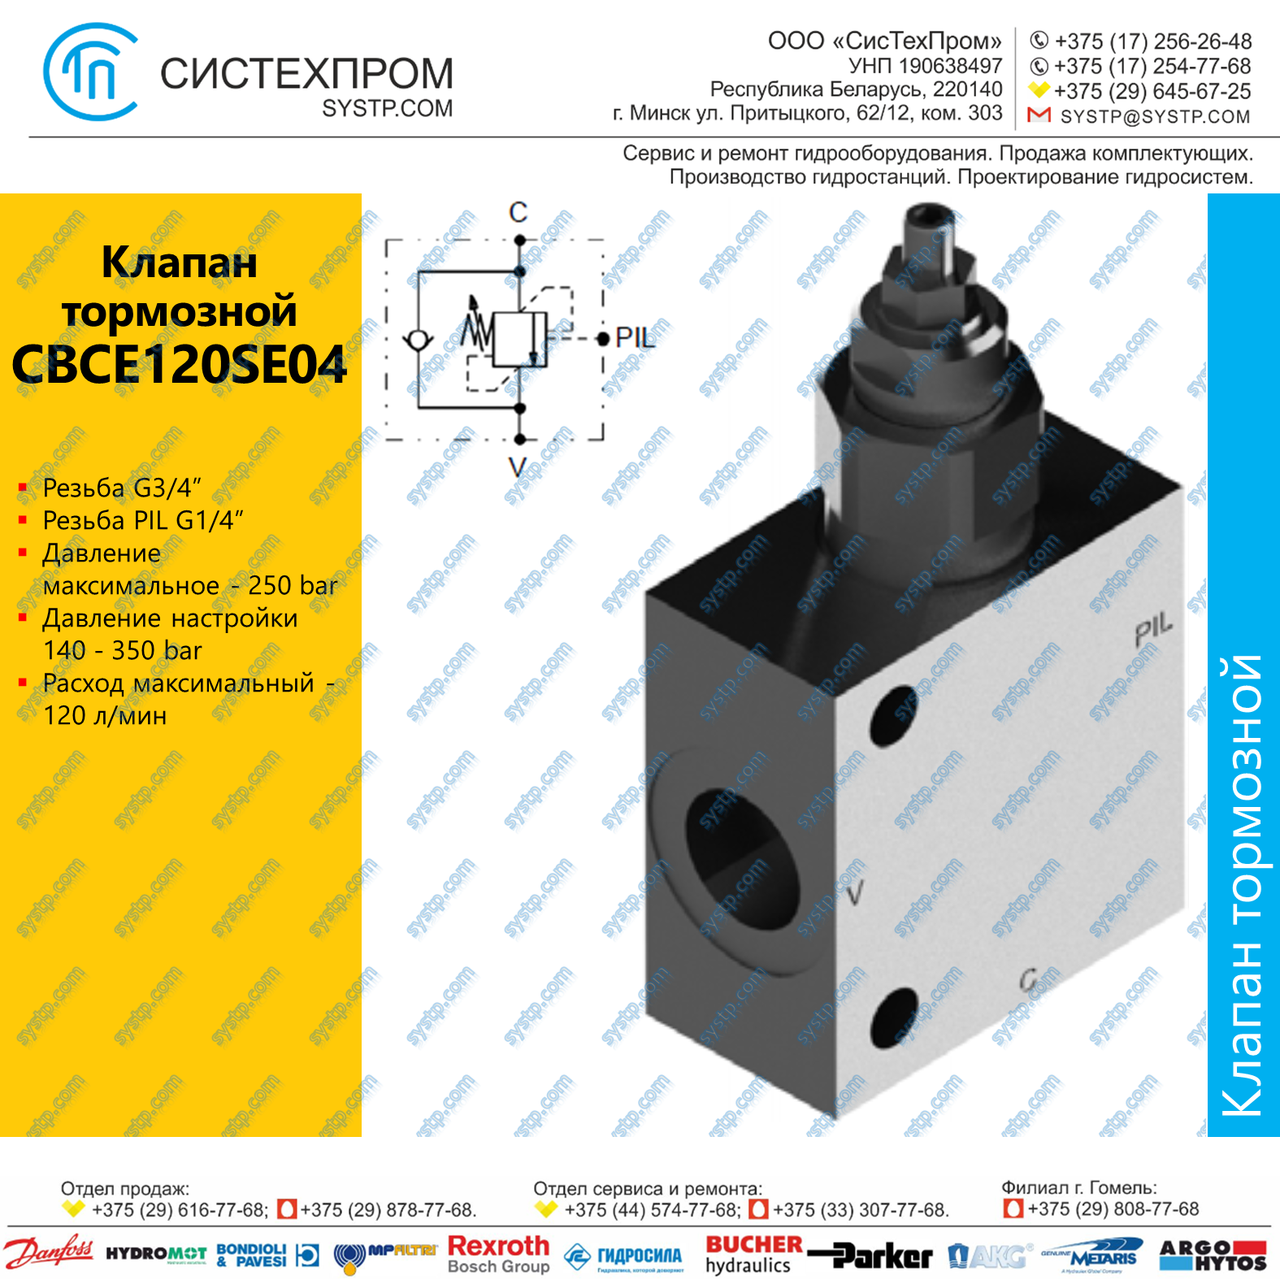 CBCE120SE04 Клапан тормозной 120 л/мин G3/4, G1/4